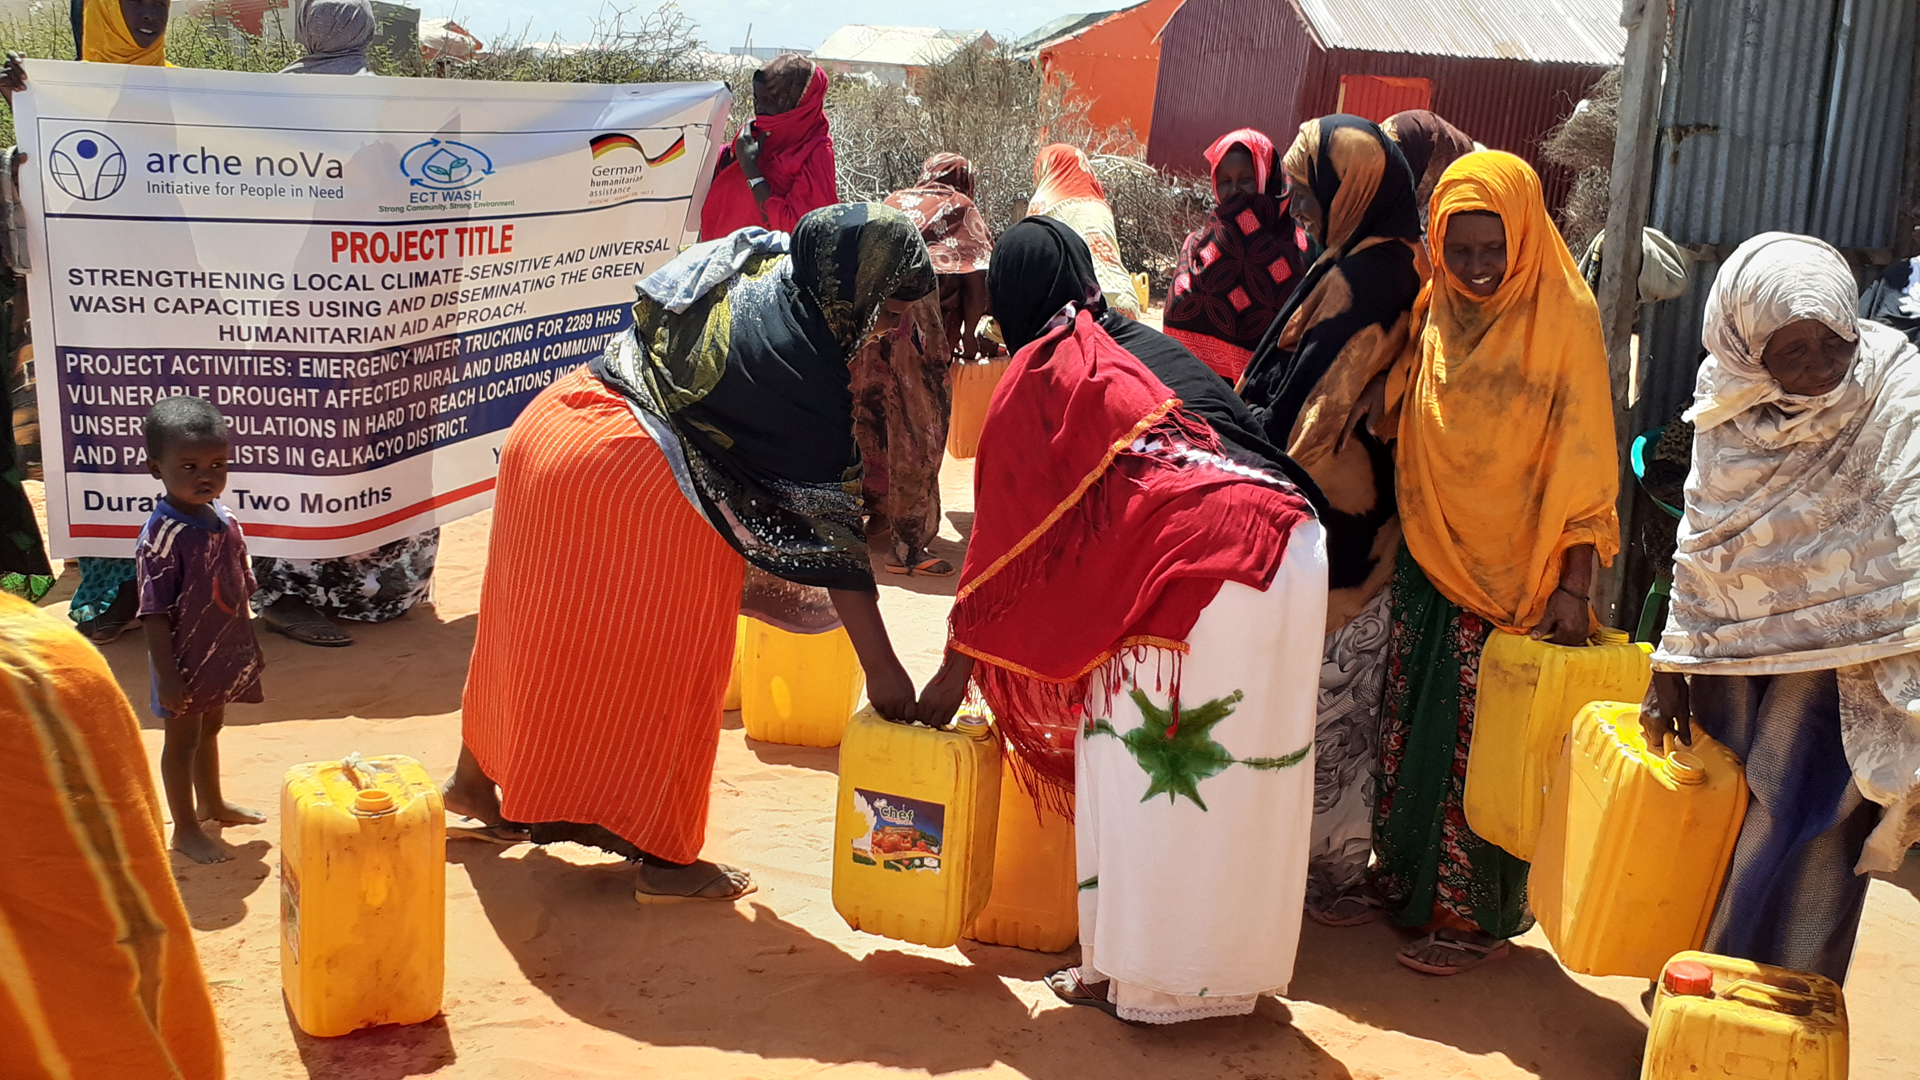 Eine Gruppe Frauen im Freien, die gelbe Wasserkanister aufheben oder tragen. Im Hintergrund halten zwei Personen ein Banner, auf dem der Projekttitel des Global Programms zu lesen ist. 